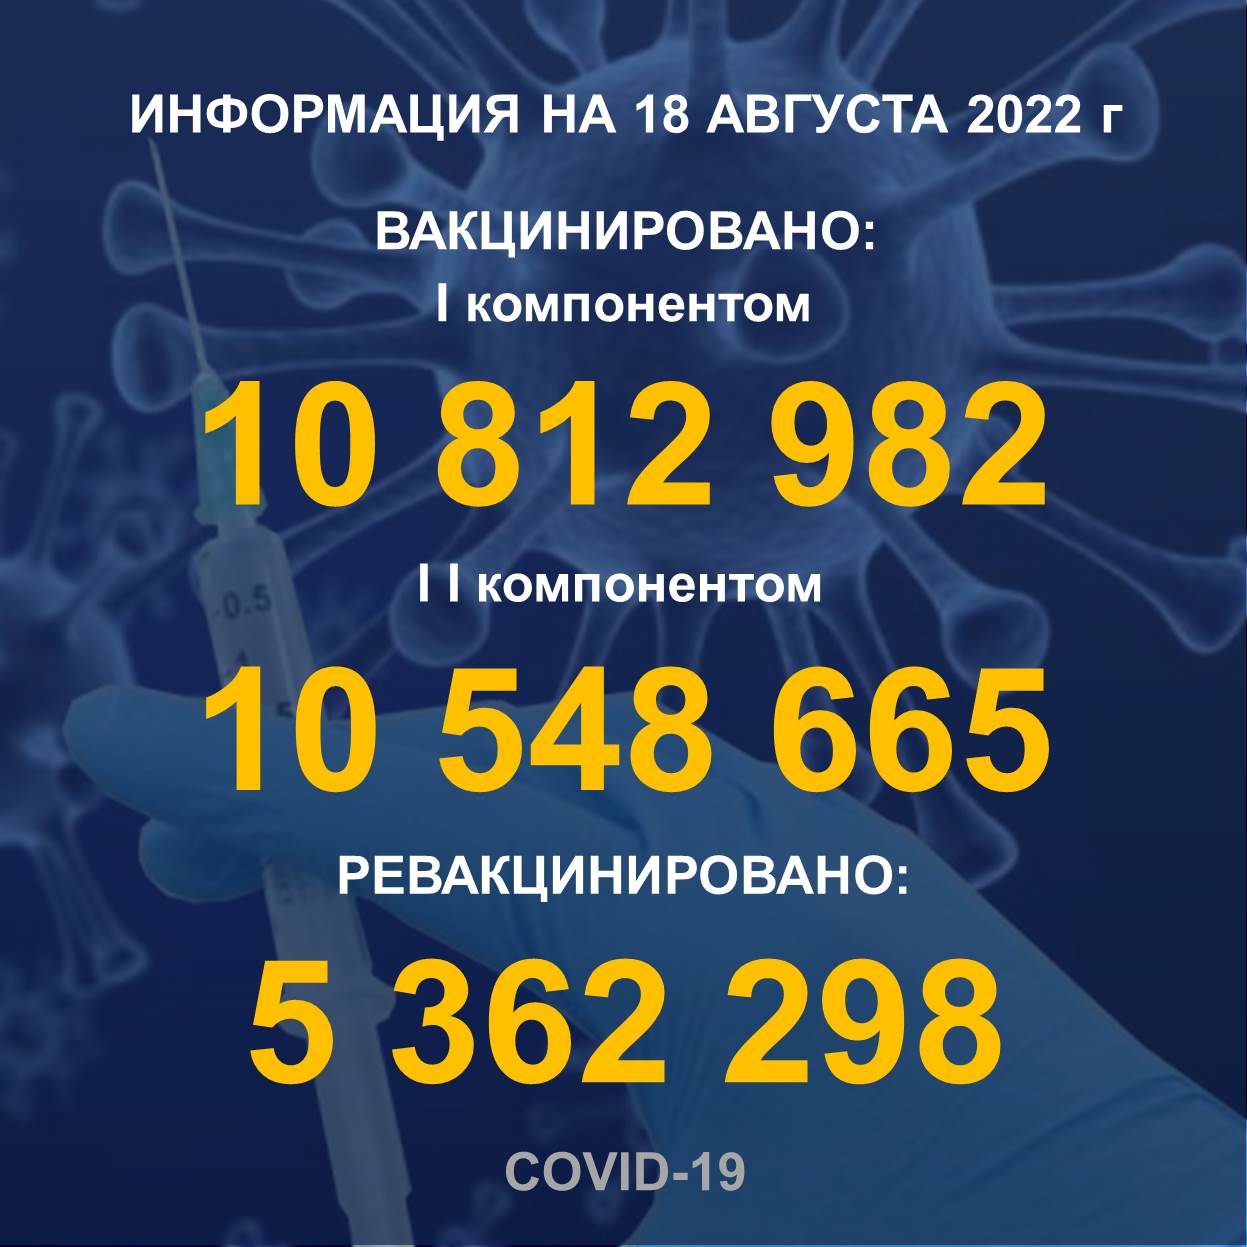 I компонентом 10 812 982 человек провакцинировано в Казахстане на 15.08.2022 г, II компонентом 10 548 665 человек. Ревакцинировано – 5 362 298